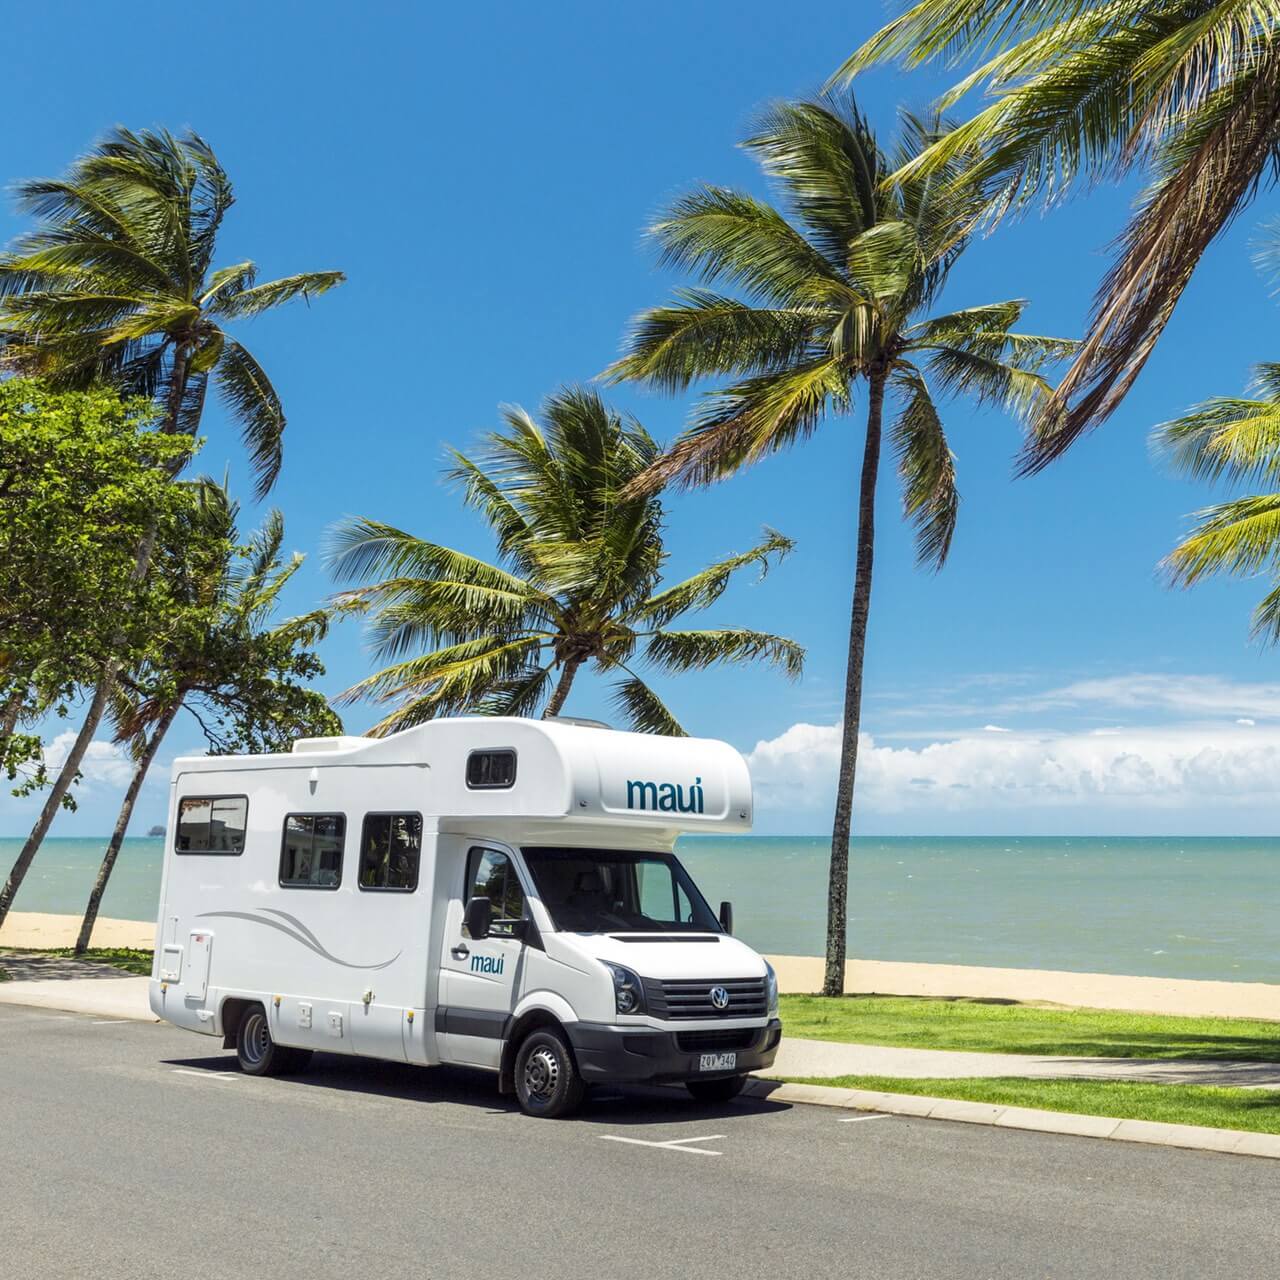 Wohnmobil von Maui in Australien am Trinity Beach